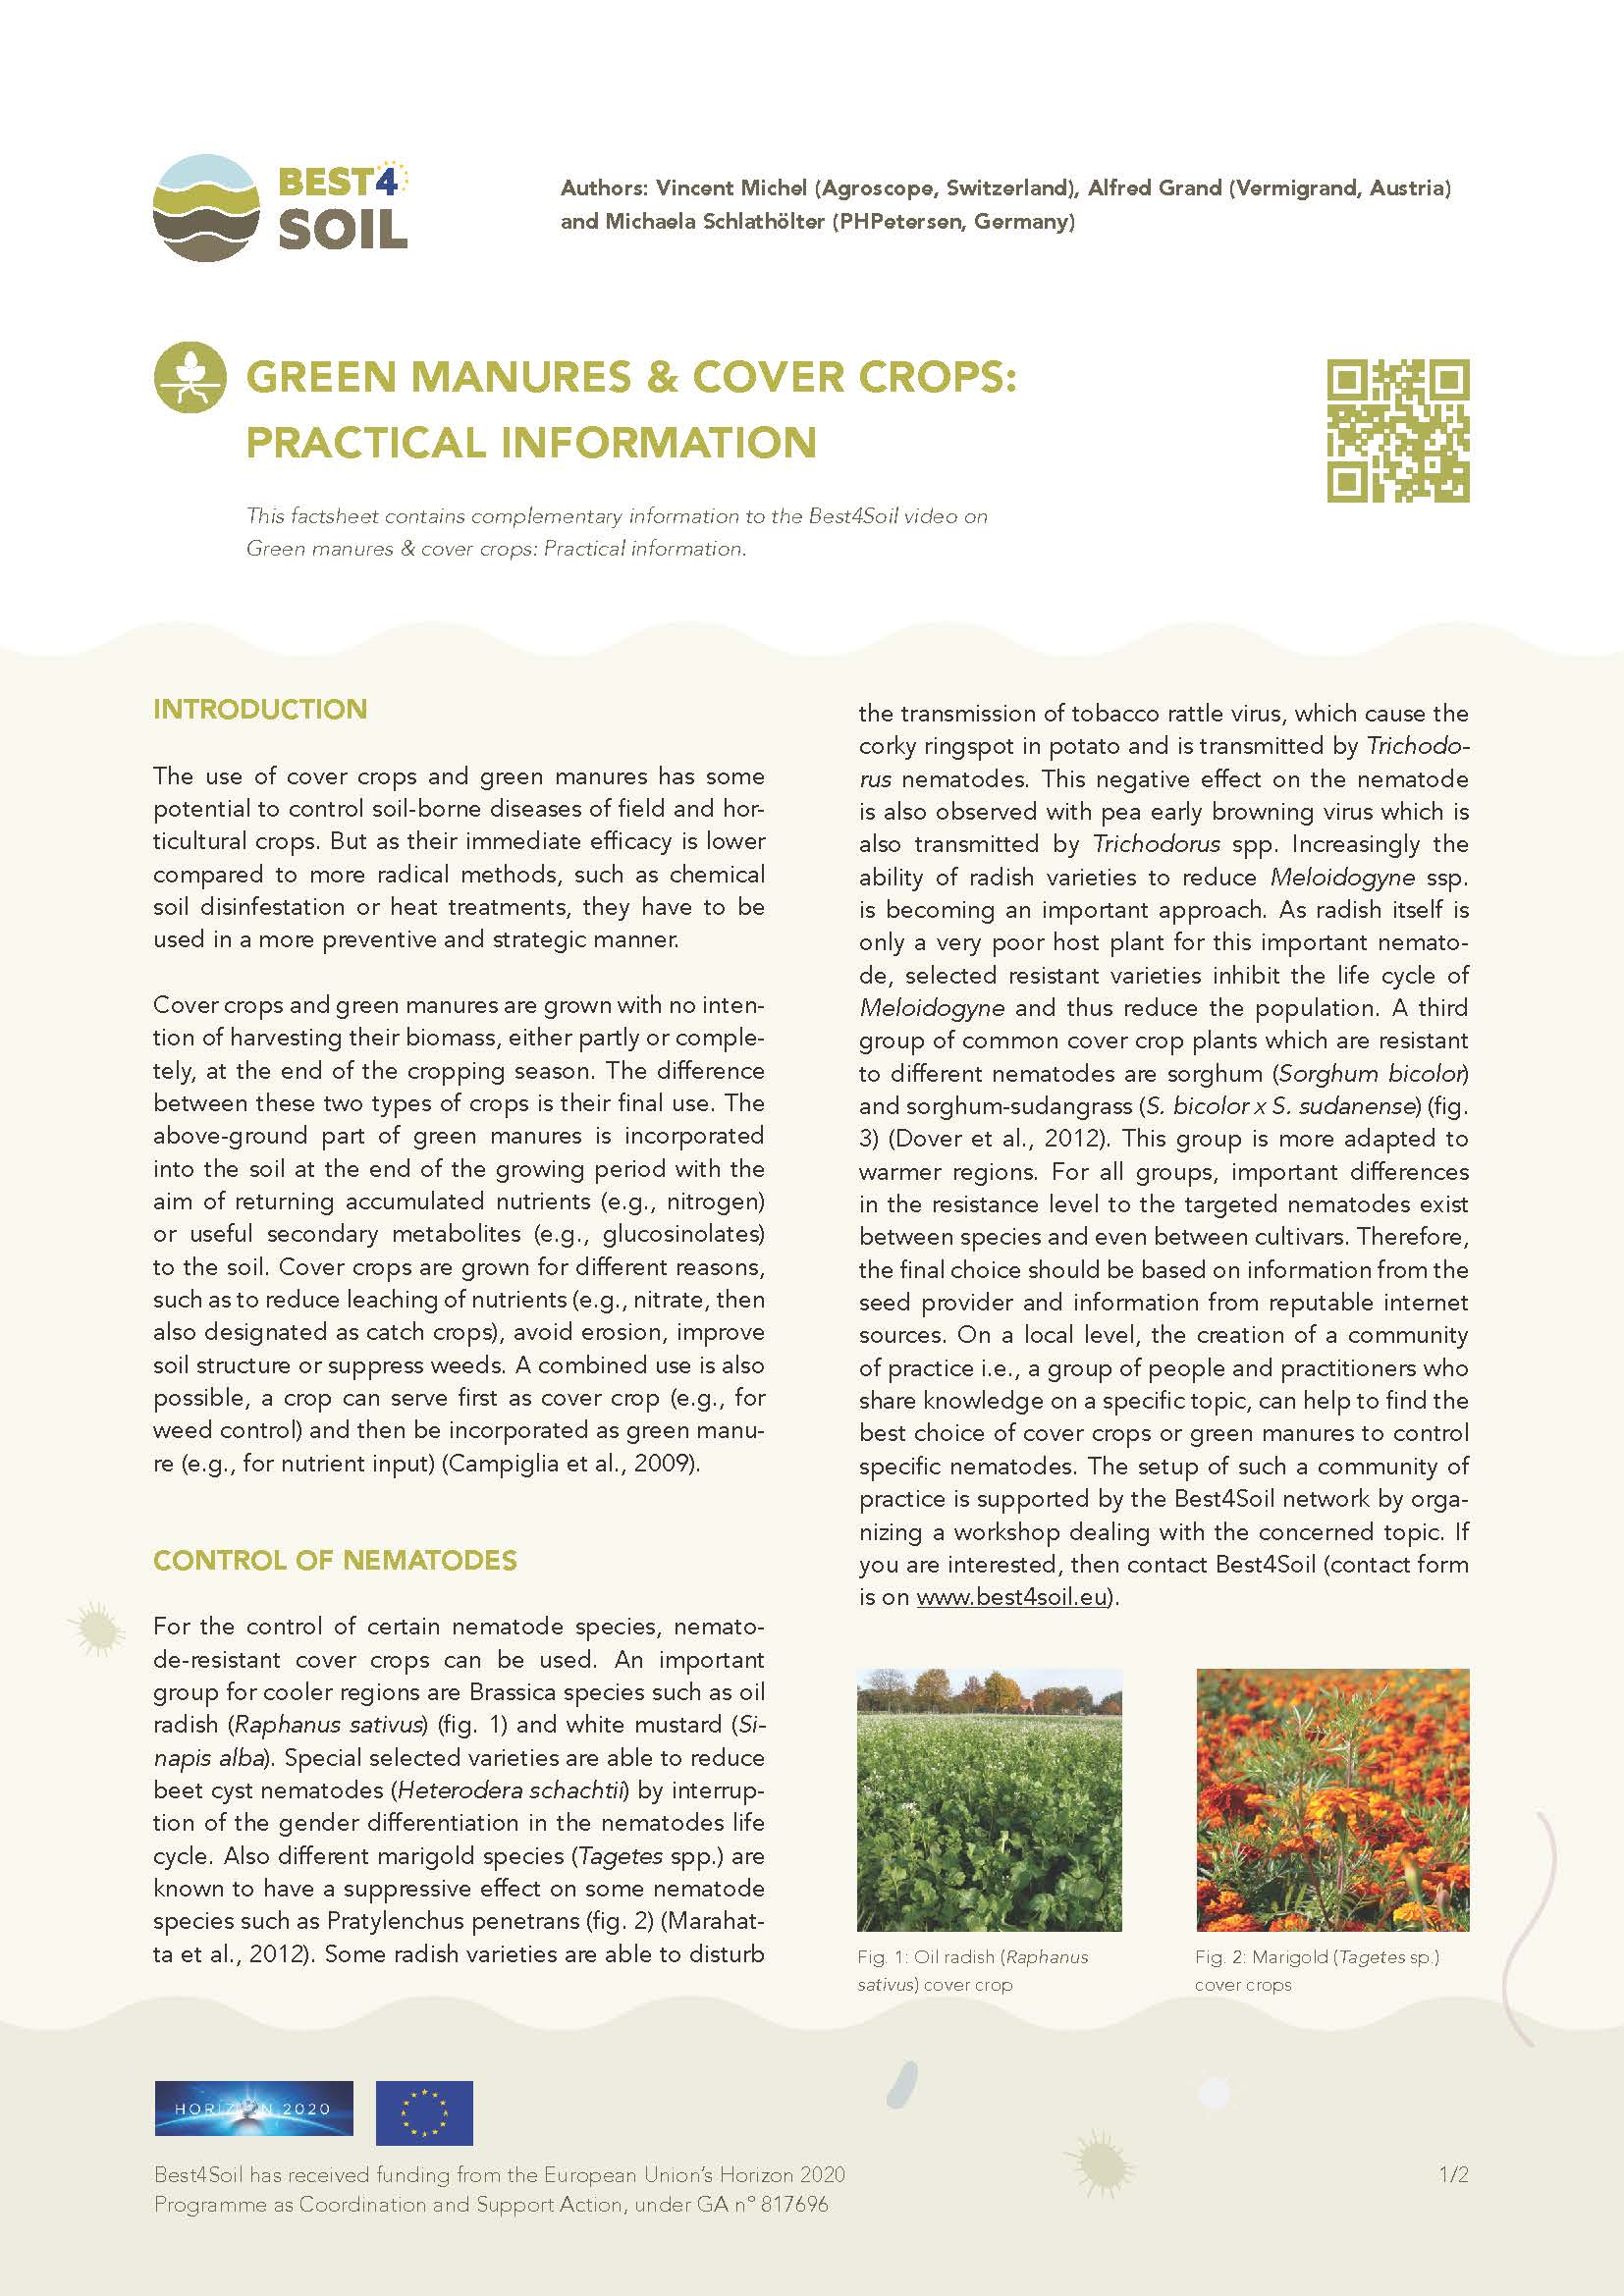 Πράσινα λιπάσματα και καλλιέργειες: πρακτικές πληροφορίες (Ενημερωτικό φύλλο Best4Soil)